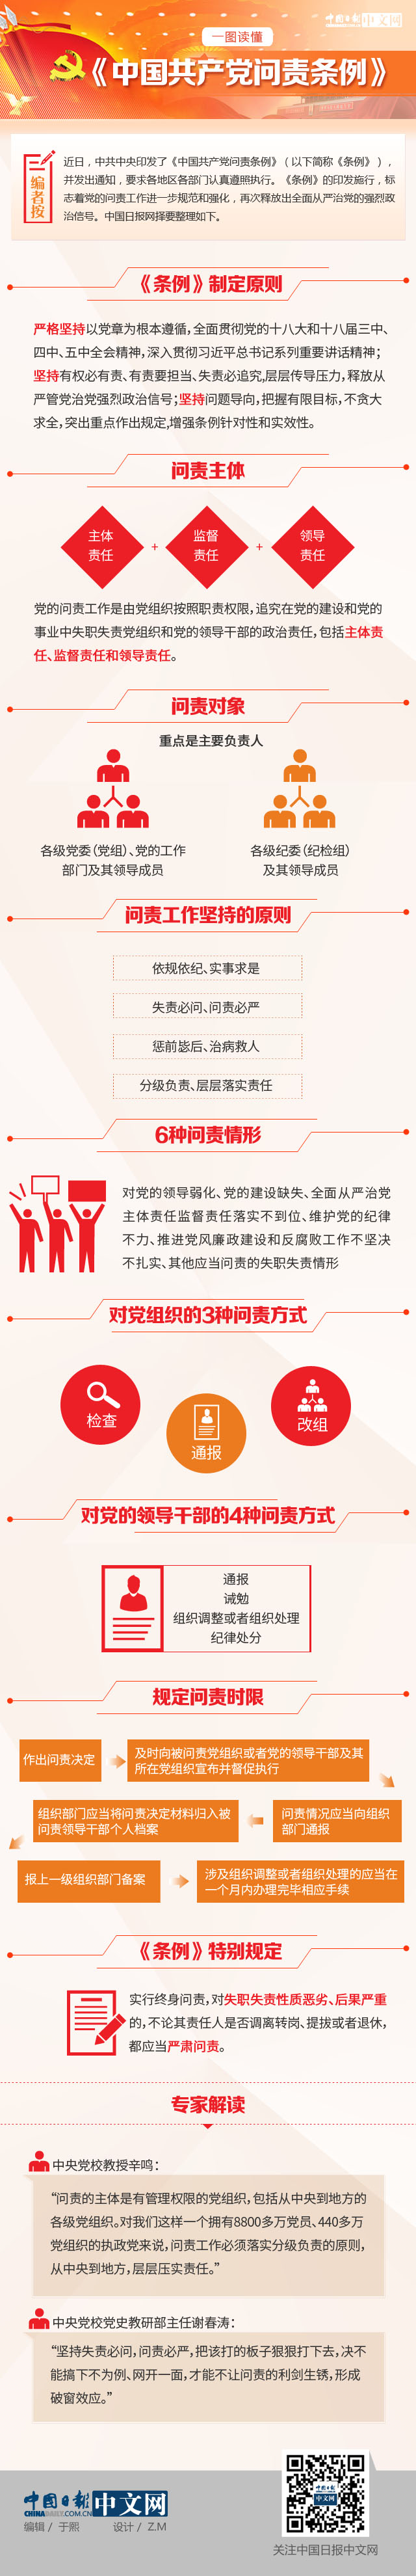 一图读懂《中国共产党问责条例》